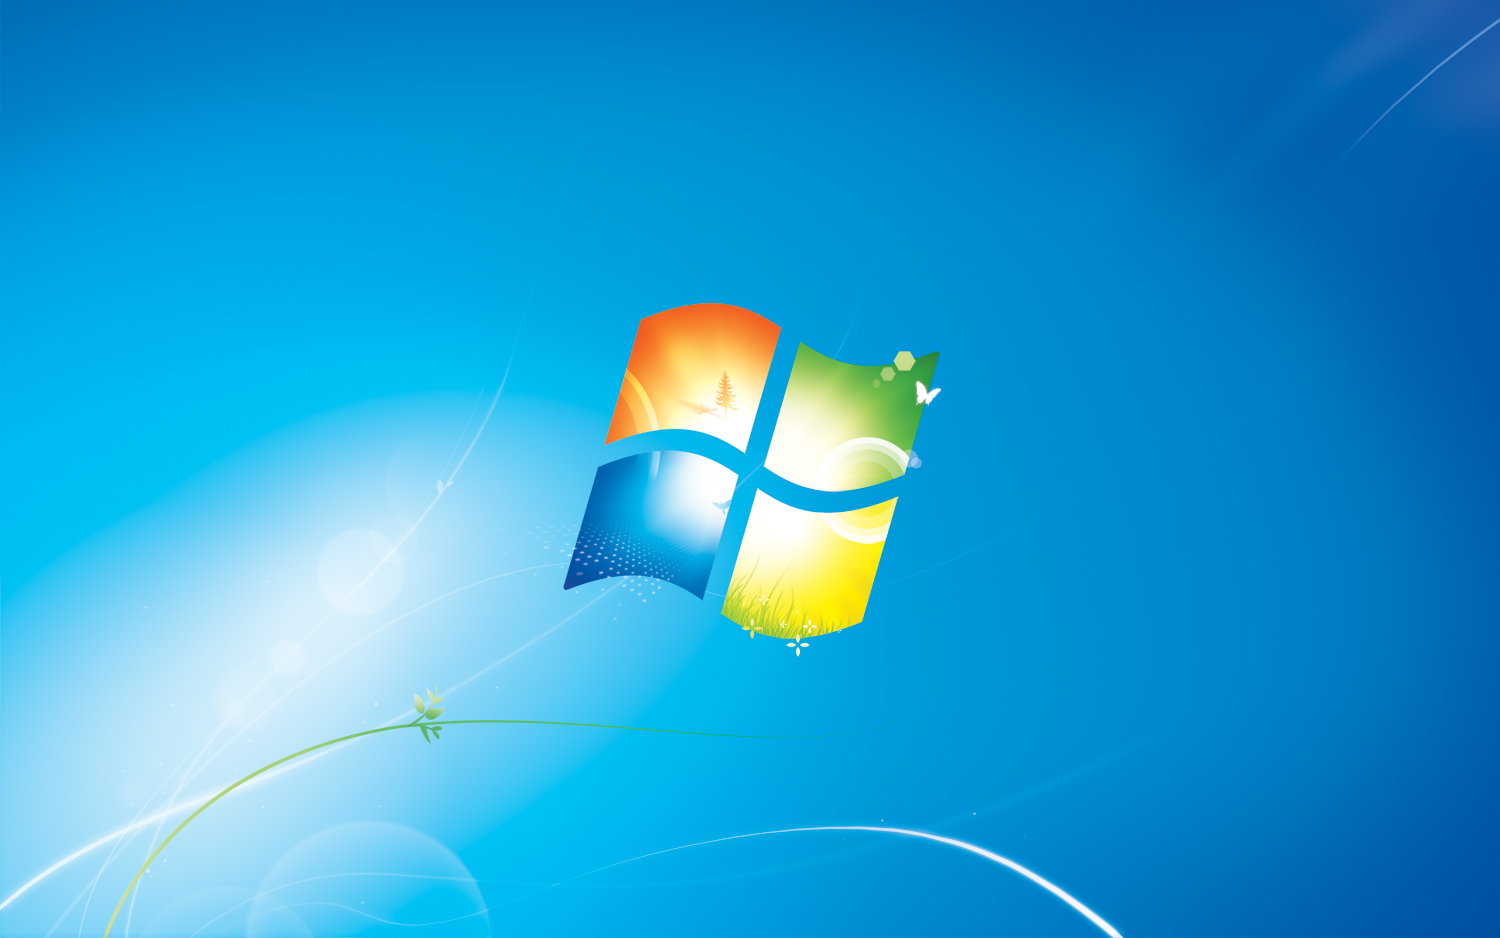 PD Wallpaper: Windows 7